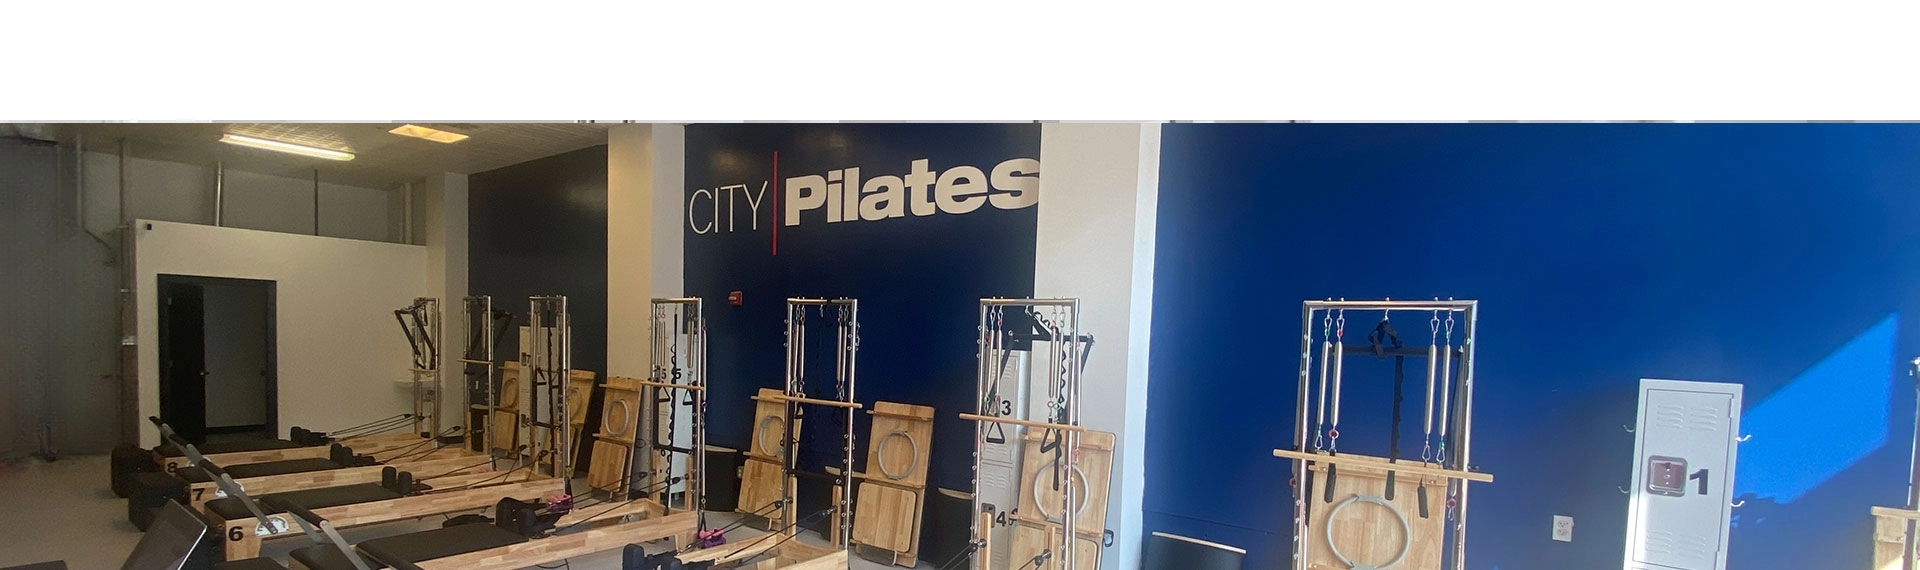 City Pilates - St. Louis